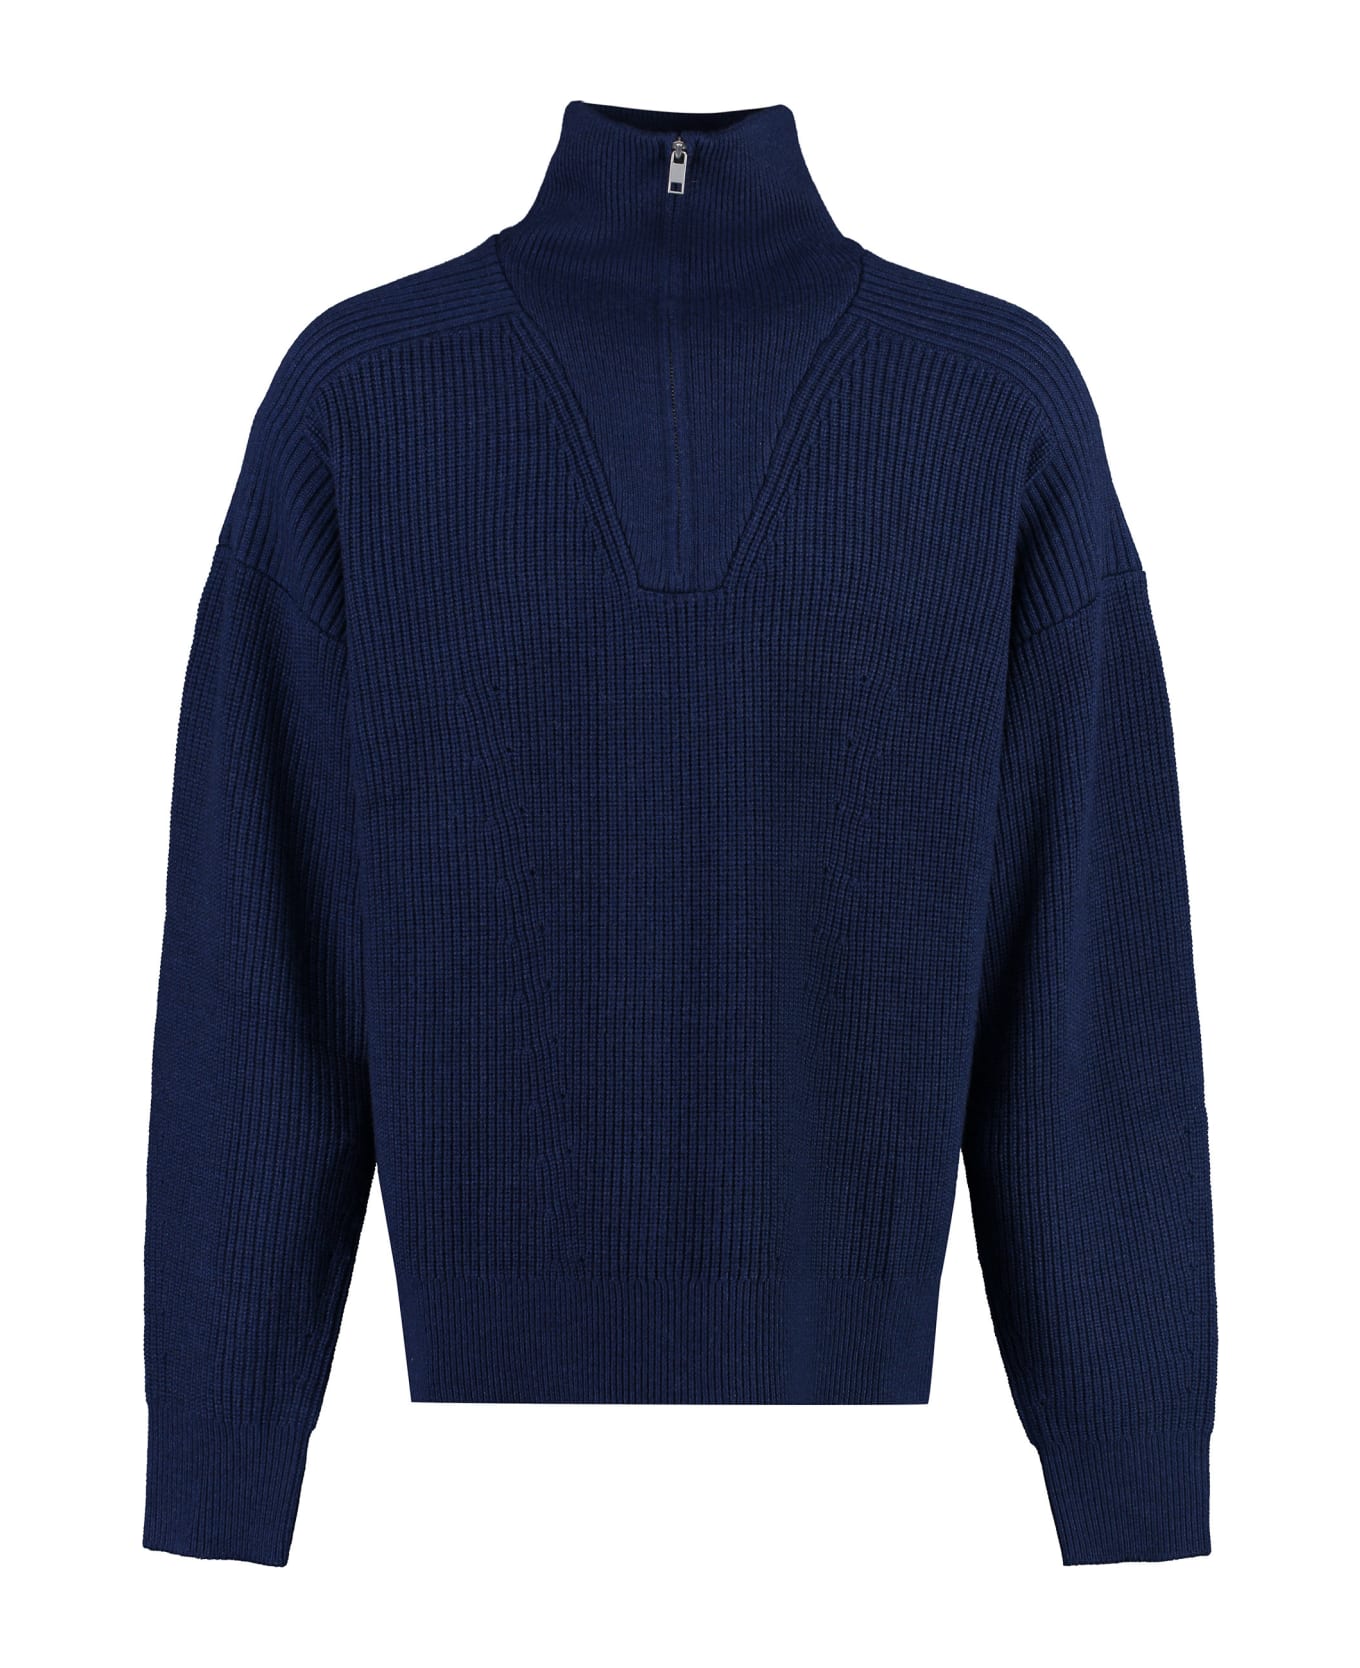 Isabel Marant Benny Turtleneck Wool Pullover - blue ニットウェア